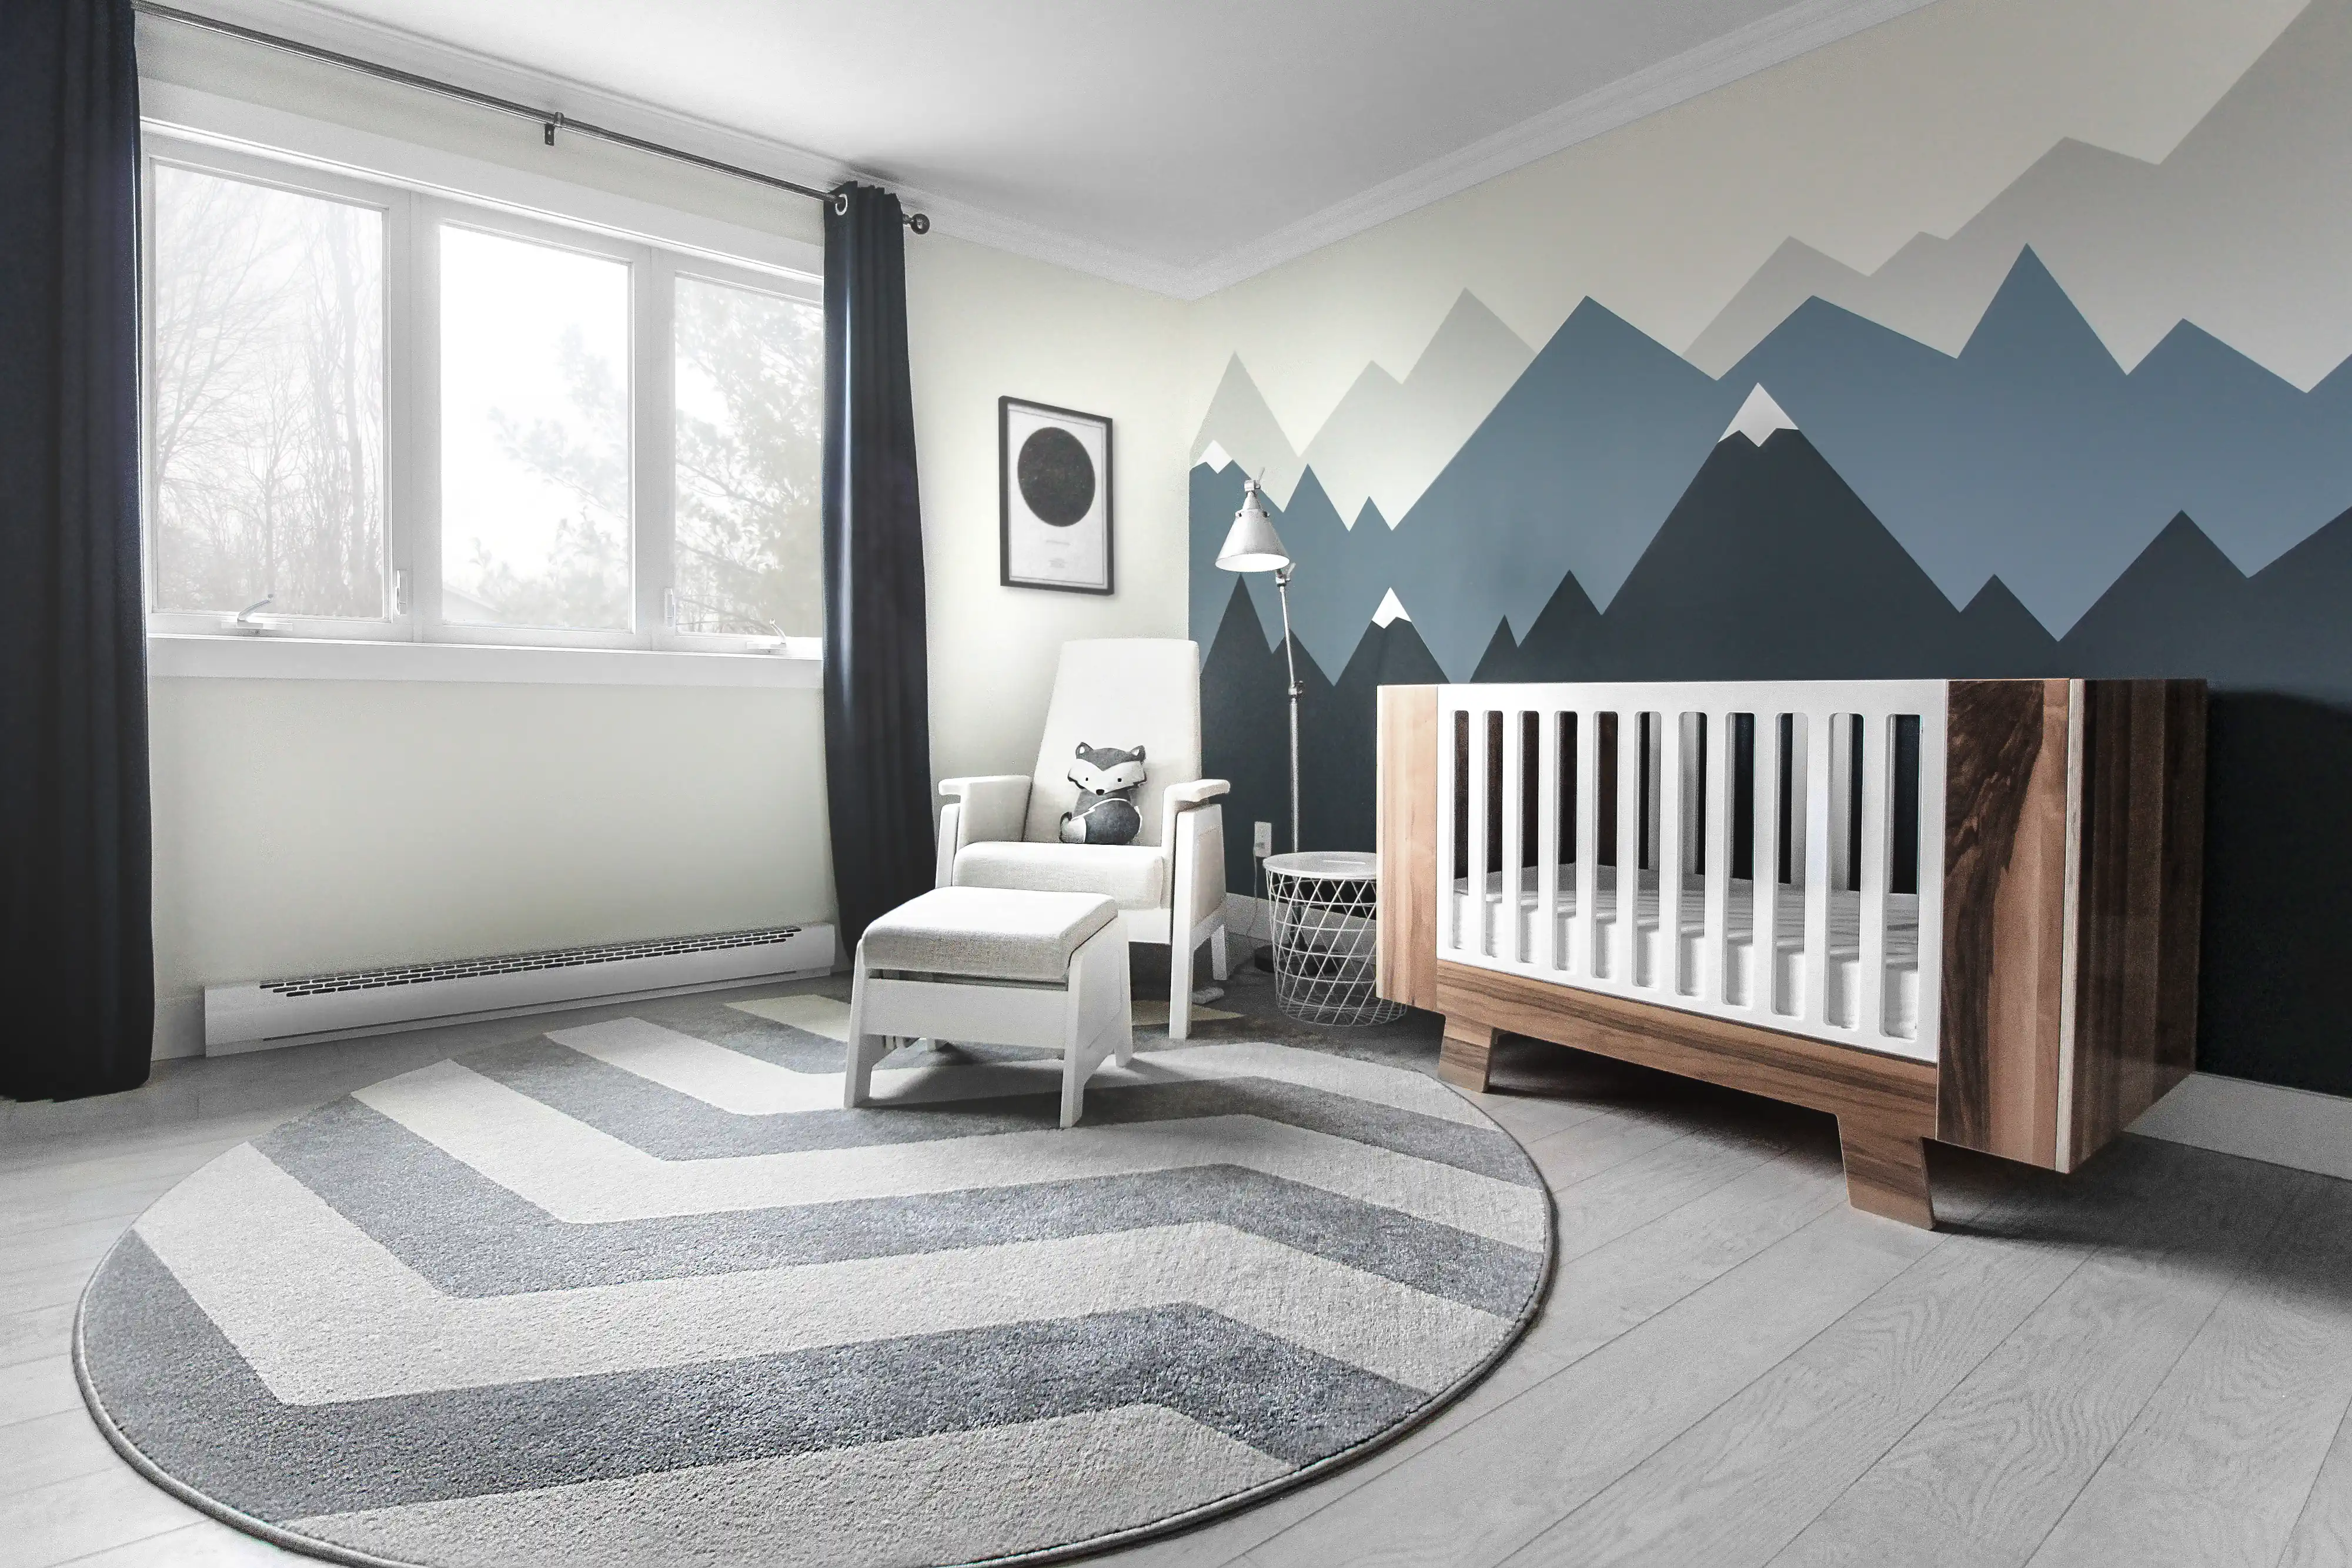 Chambre de bébé moderne avec une murale de montagne bleue et blanche, un berceau en bois et un fauteuil gris, intérieur signé Sarah Brown Design